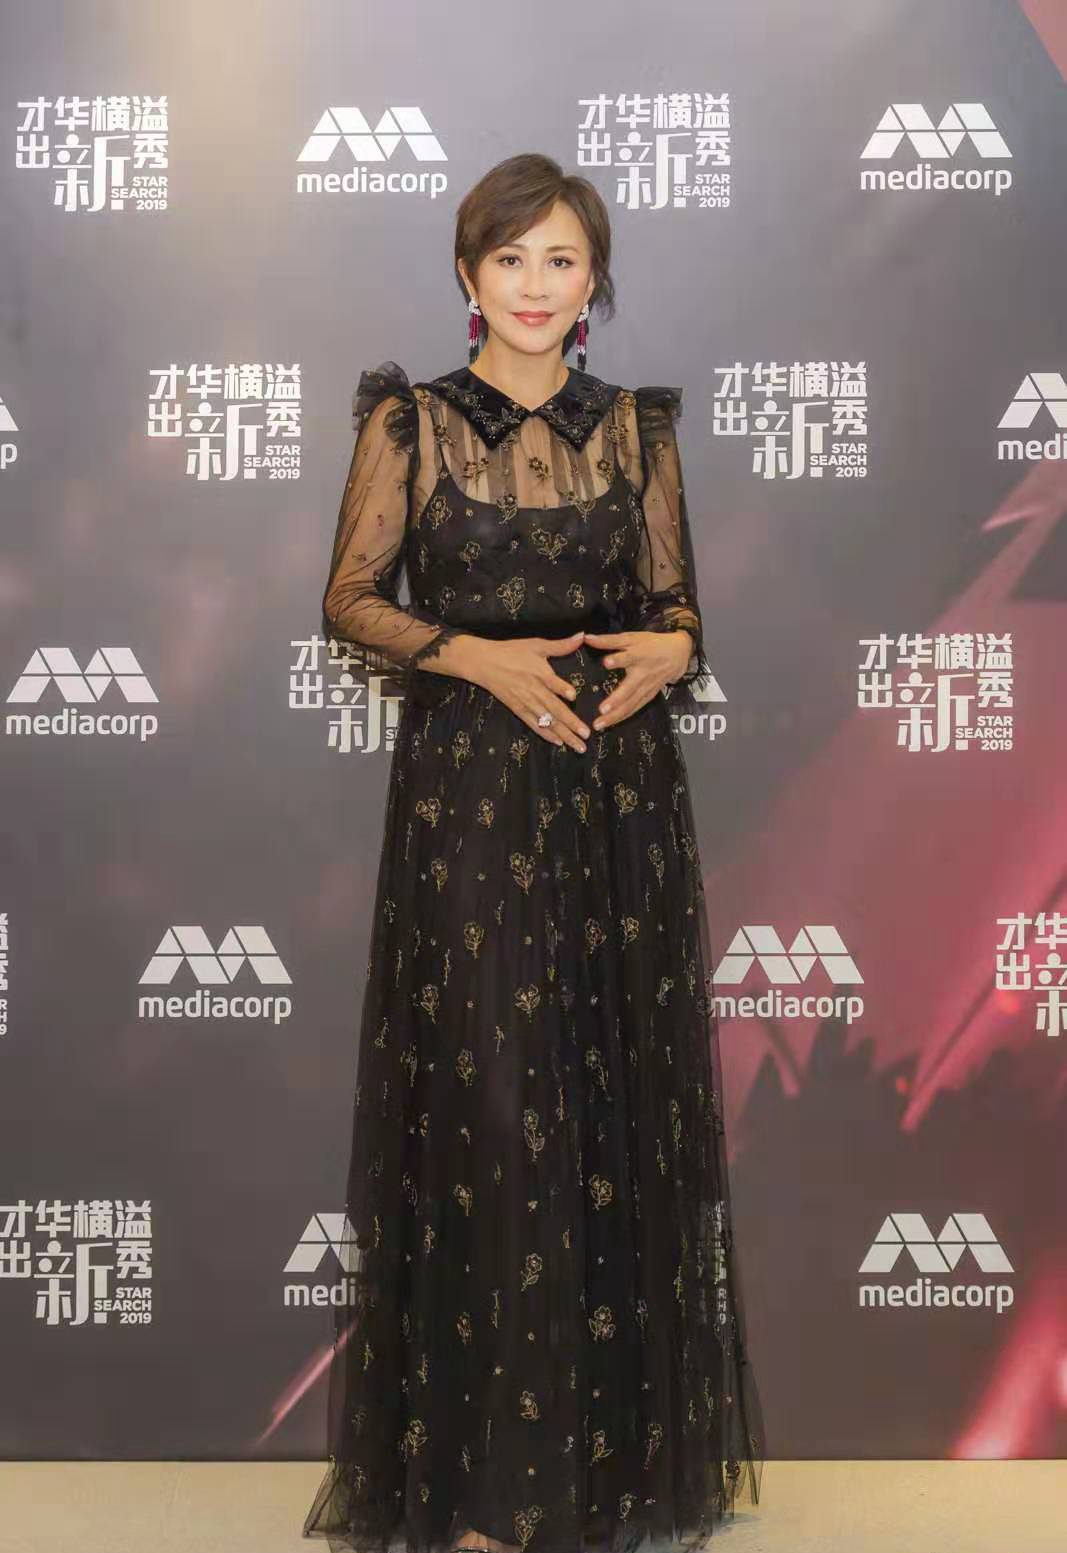 刘嘉玲出席活动,一袭黑色薄纱长裙优雅显气质,53岁了还是这么美